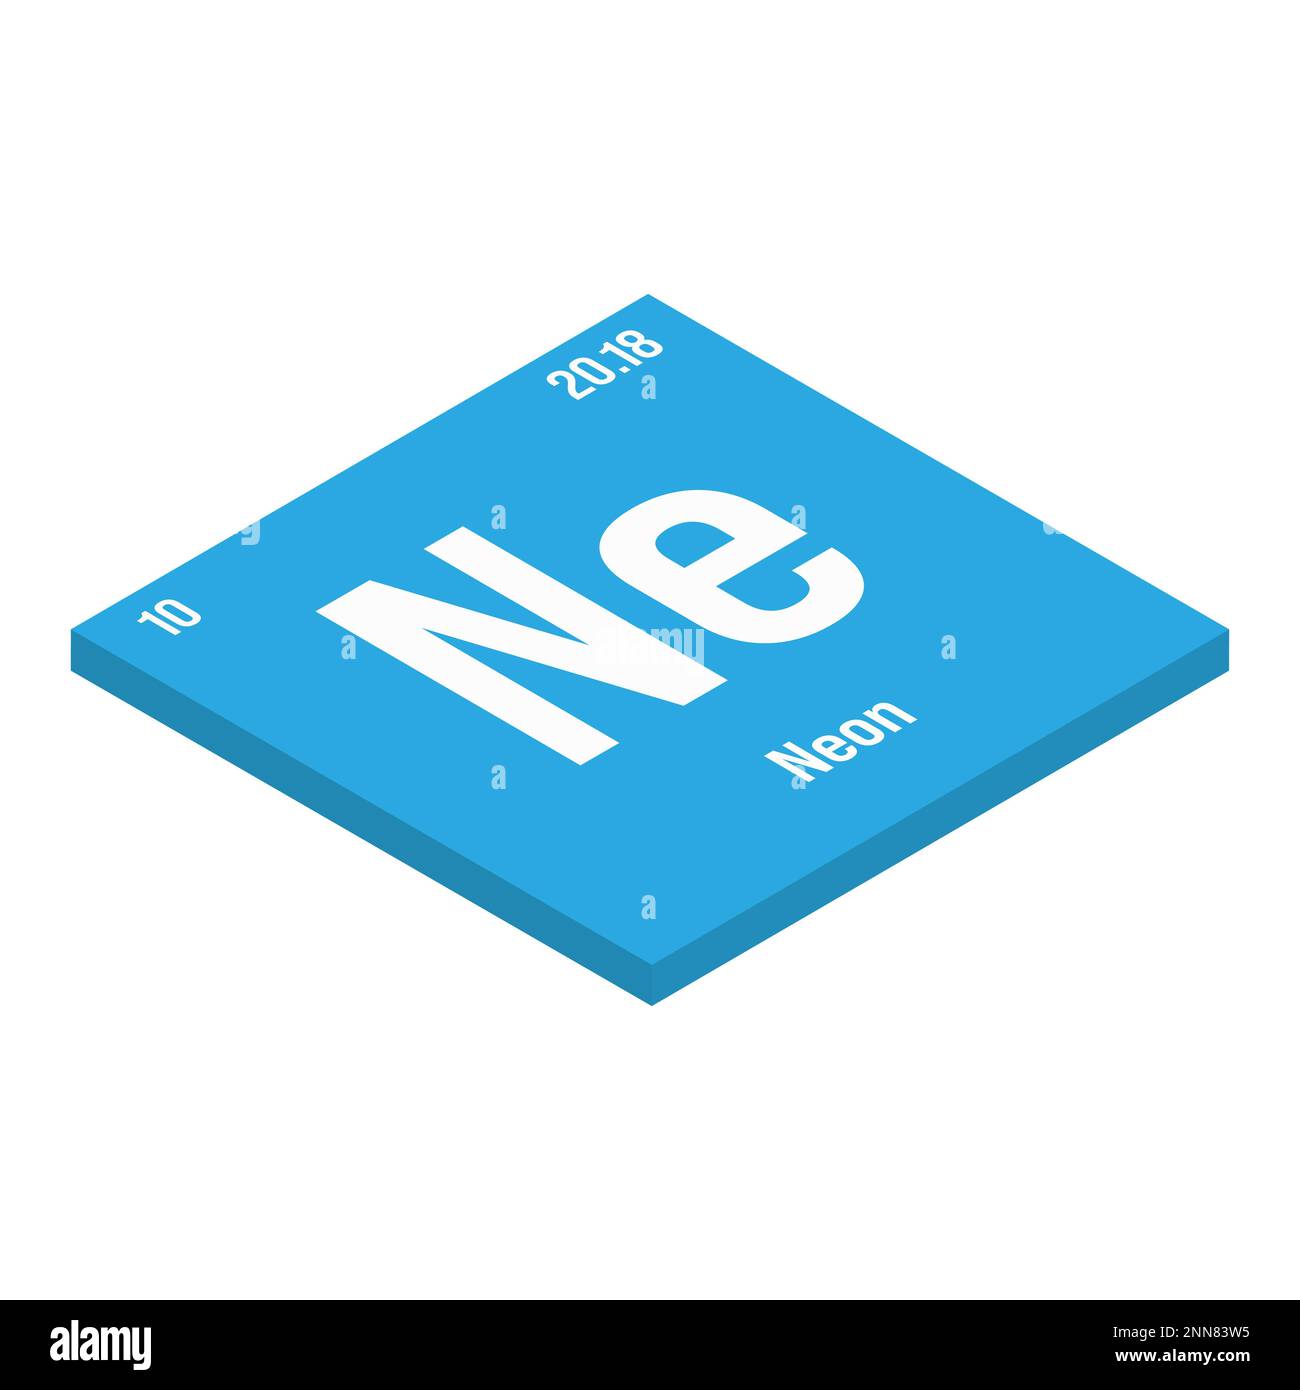 Neon, NE, elemento tavola periodico con nome, simbolo, numero atomico e peso. Gas inerte con vari usi industriali, come nell'illuminazione, nei laser e come gas di riempimento in certi tipi di isolamento. Illustrazione Vettoriale